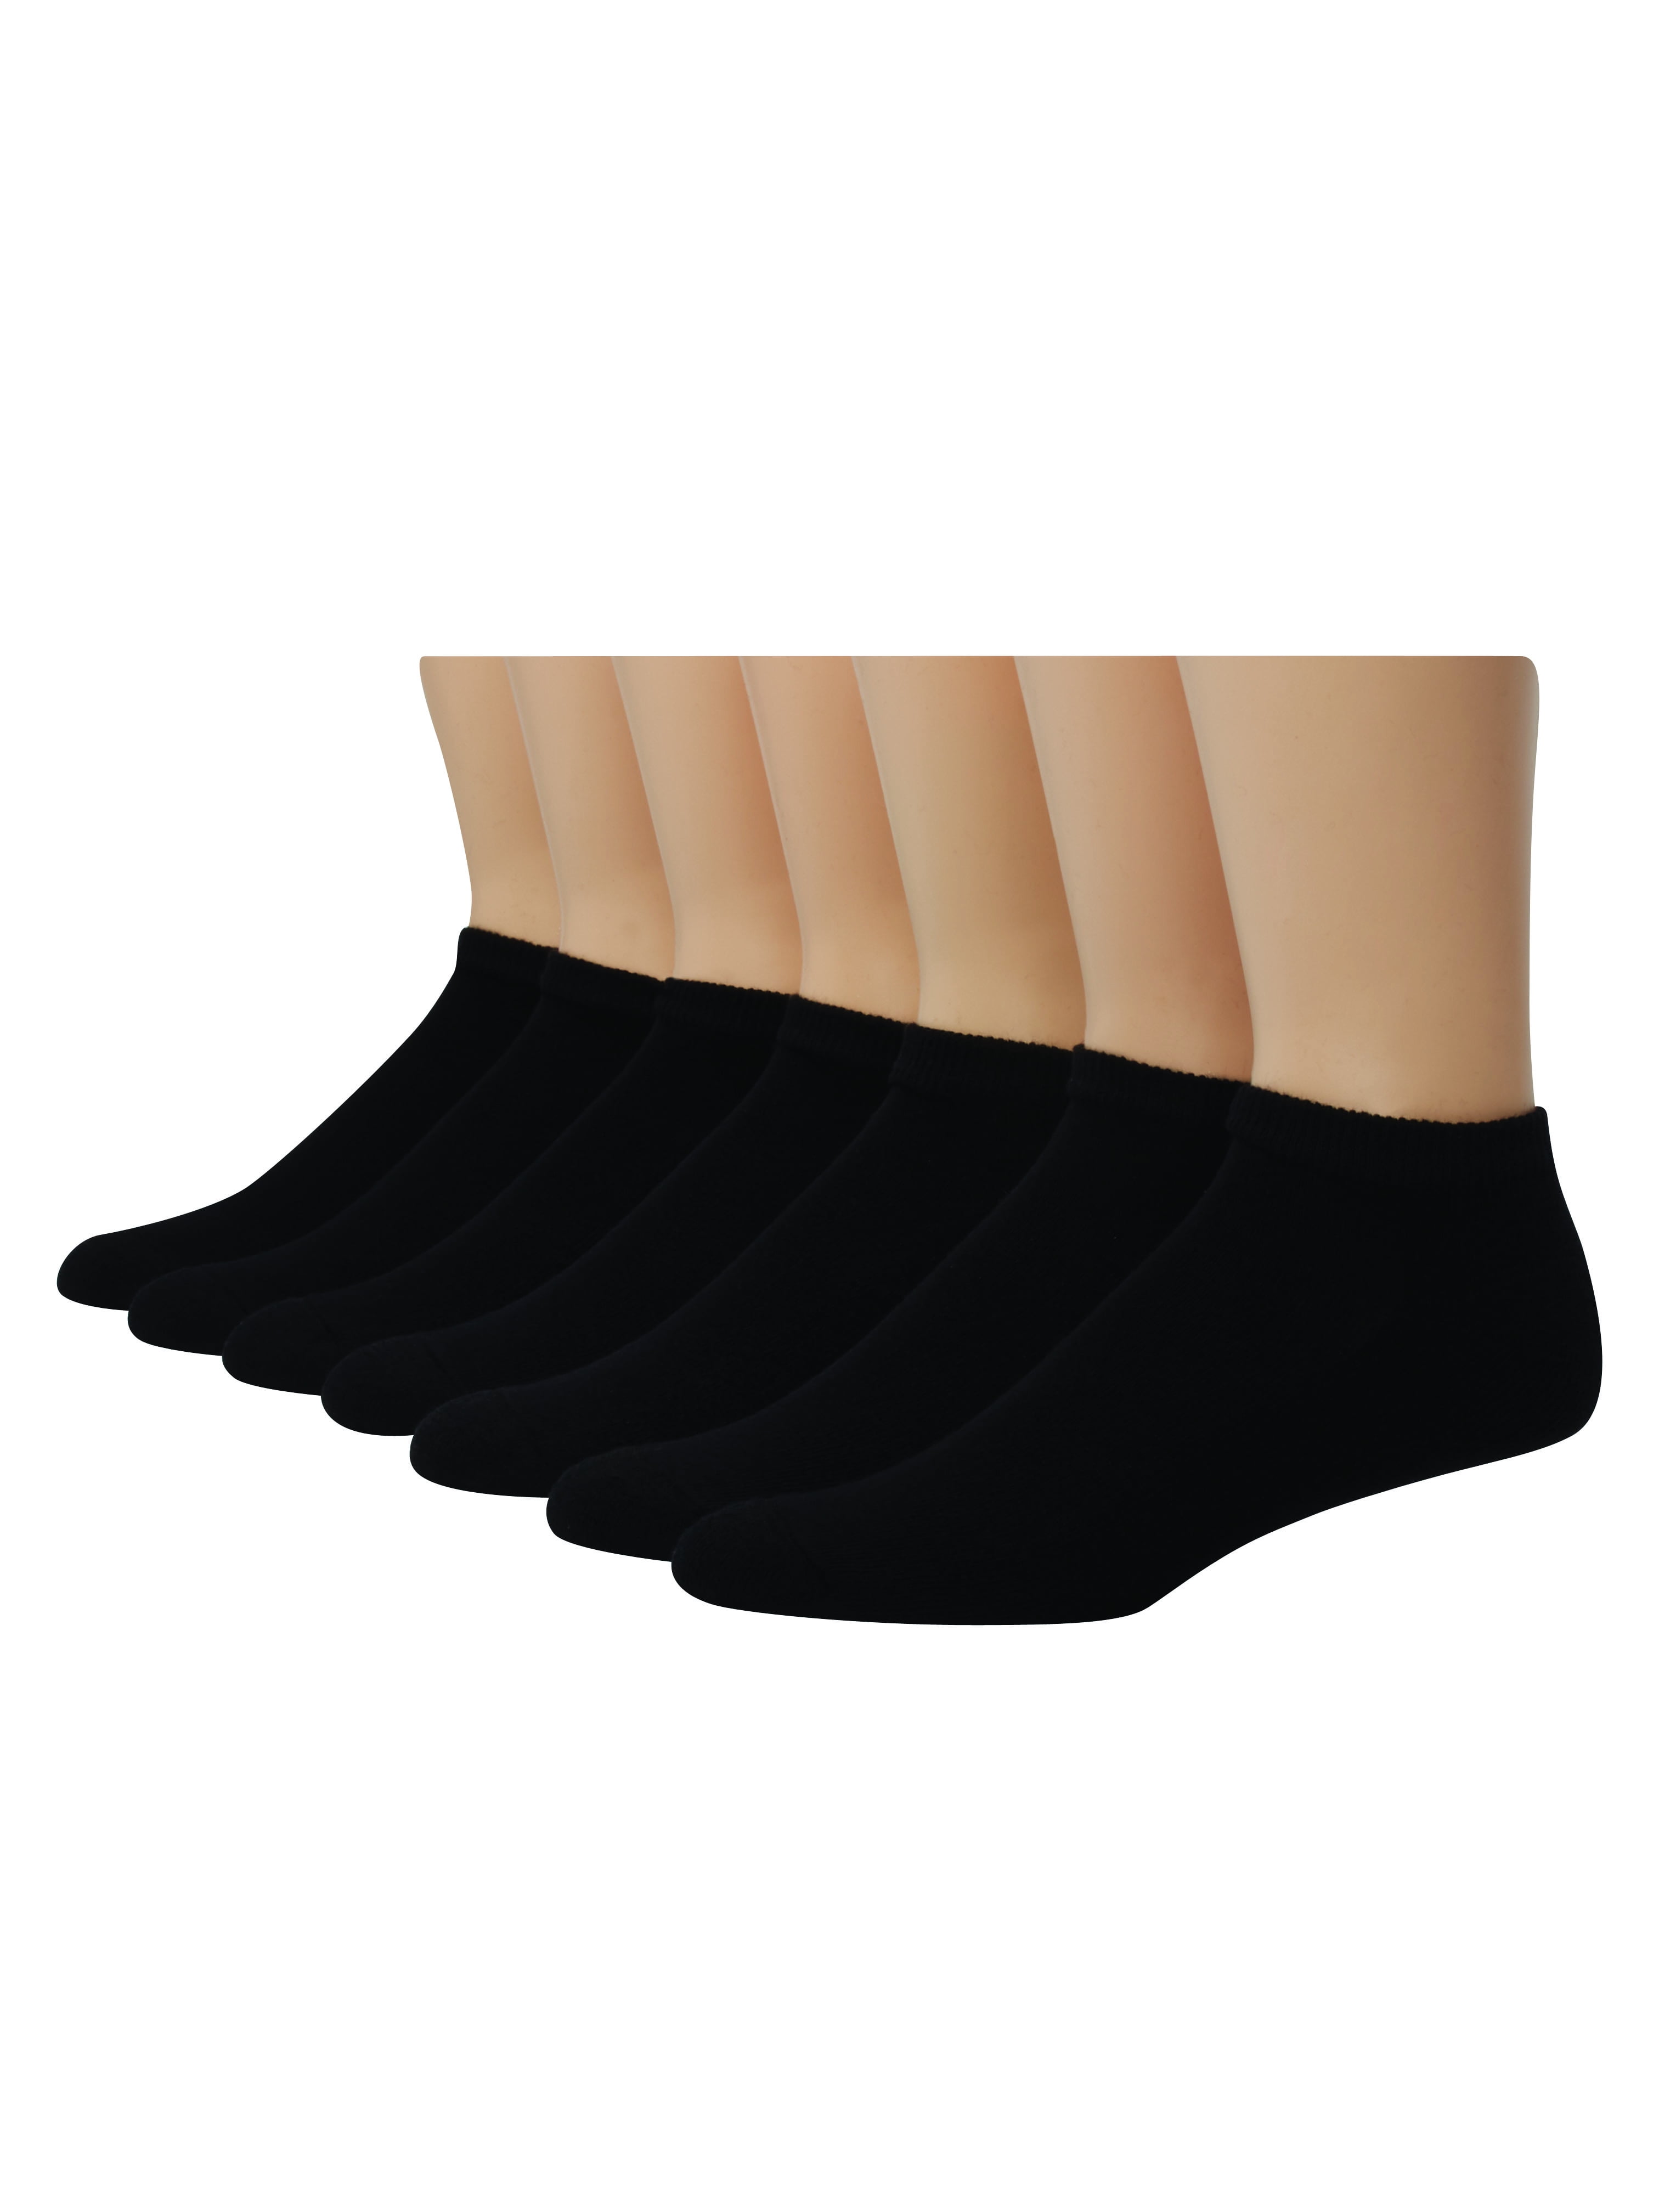 Hanes - Hanes Men's Big & Tall X-Temp Low Cut Socks, 12 Pack - Walmart ...